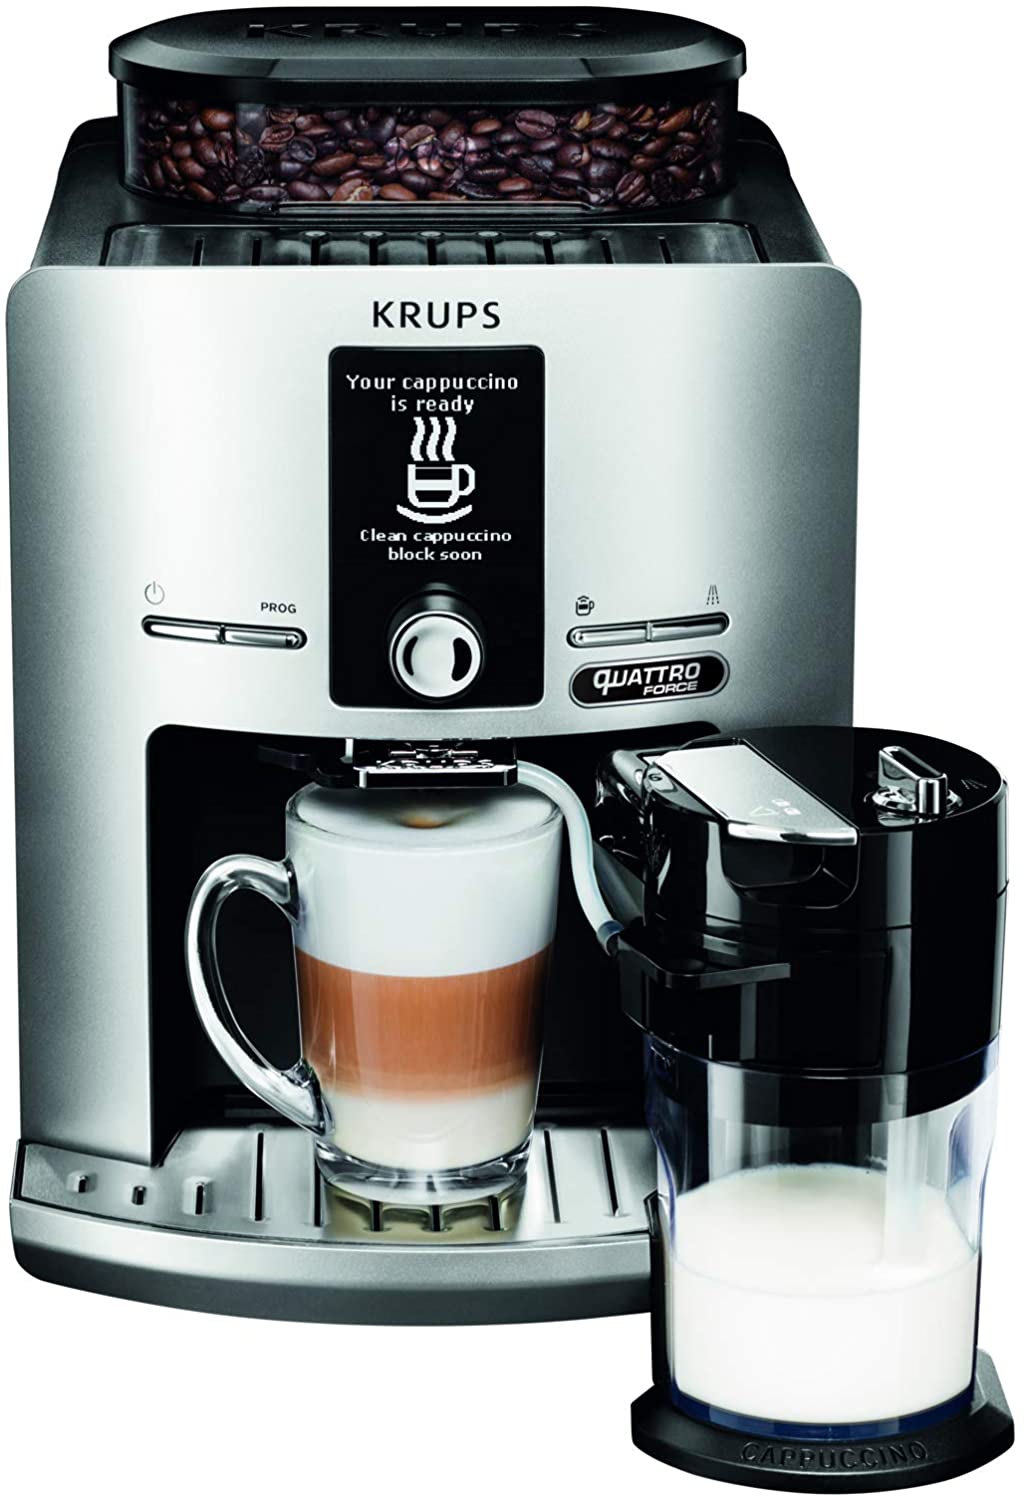 2 x Krups Reinigungstabletten XS3000 für alle Kaffeevollautomaten von Krups, 2x10 Stück, hygienische Komplett-Reinigung, einfache Verwendung